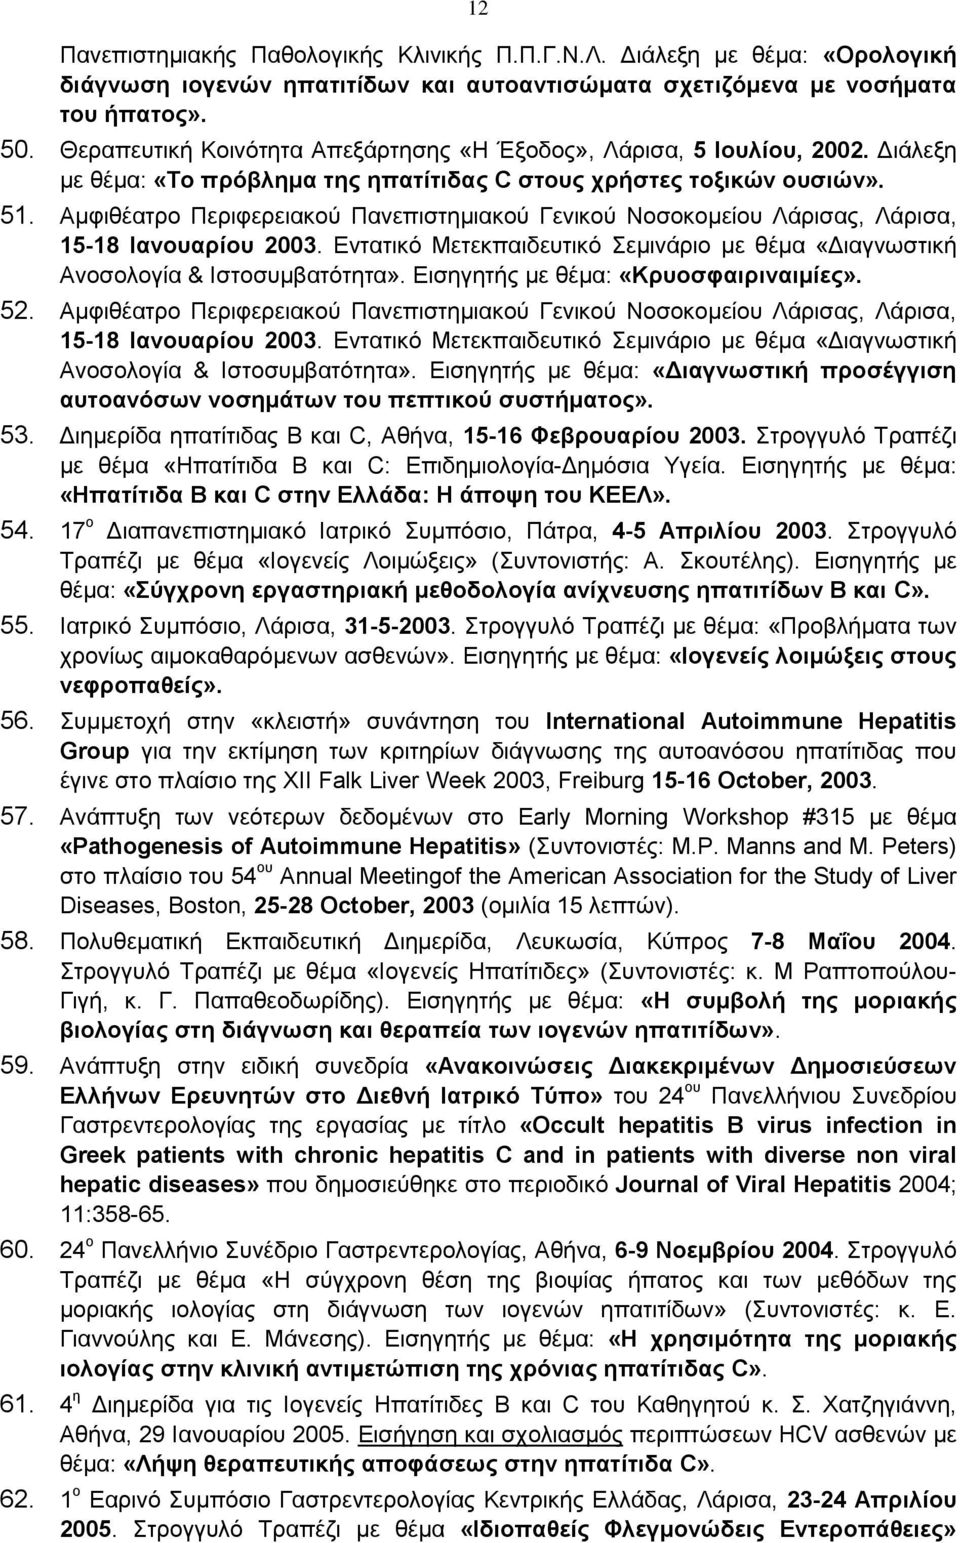 Αμφιθέατρο Περιφερειακού Πανεπιστημιακού Γενικού Νοσοκομείου Λάρισας, Λάρισα, 15-18 Ιανουαρίου 2003. Εντατικό Μετεκπαιδευτικό Σεμινάριο με θέμα «Διαγνωστική Ανοσολογία & Ιστοσυμβατότητα».